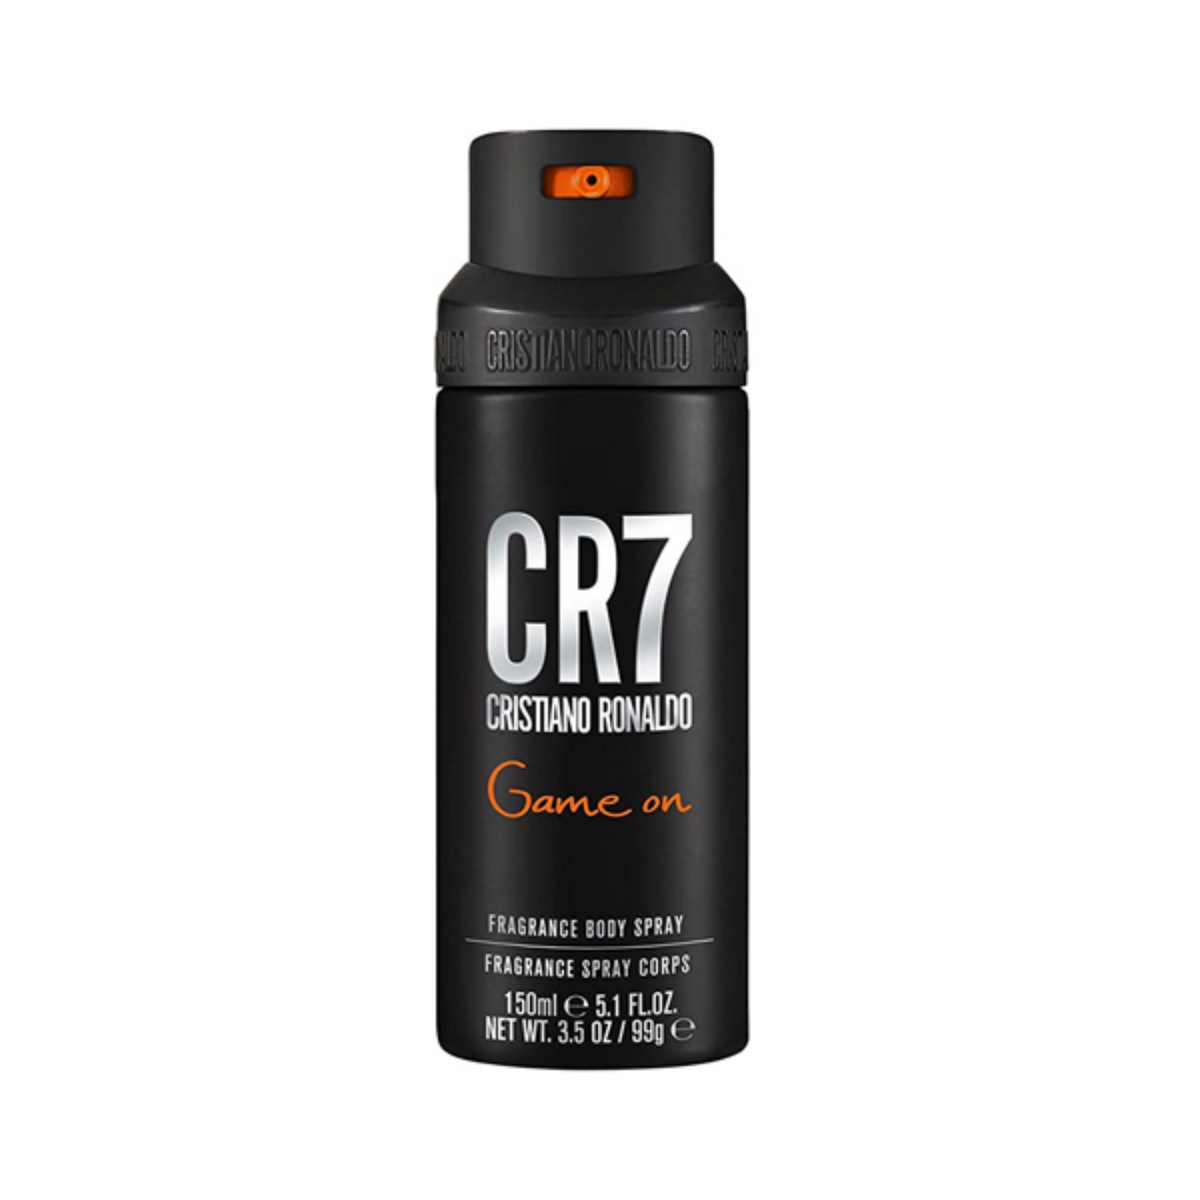 Cristiano Ronaldo CR7 Game On Fragrance Body Spray (150ml) Cristiano Ronaldo